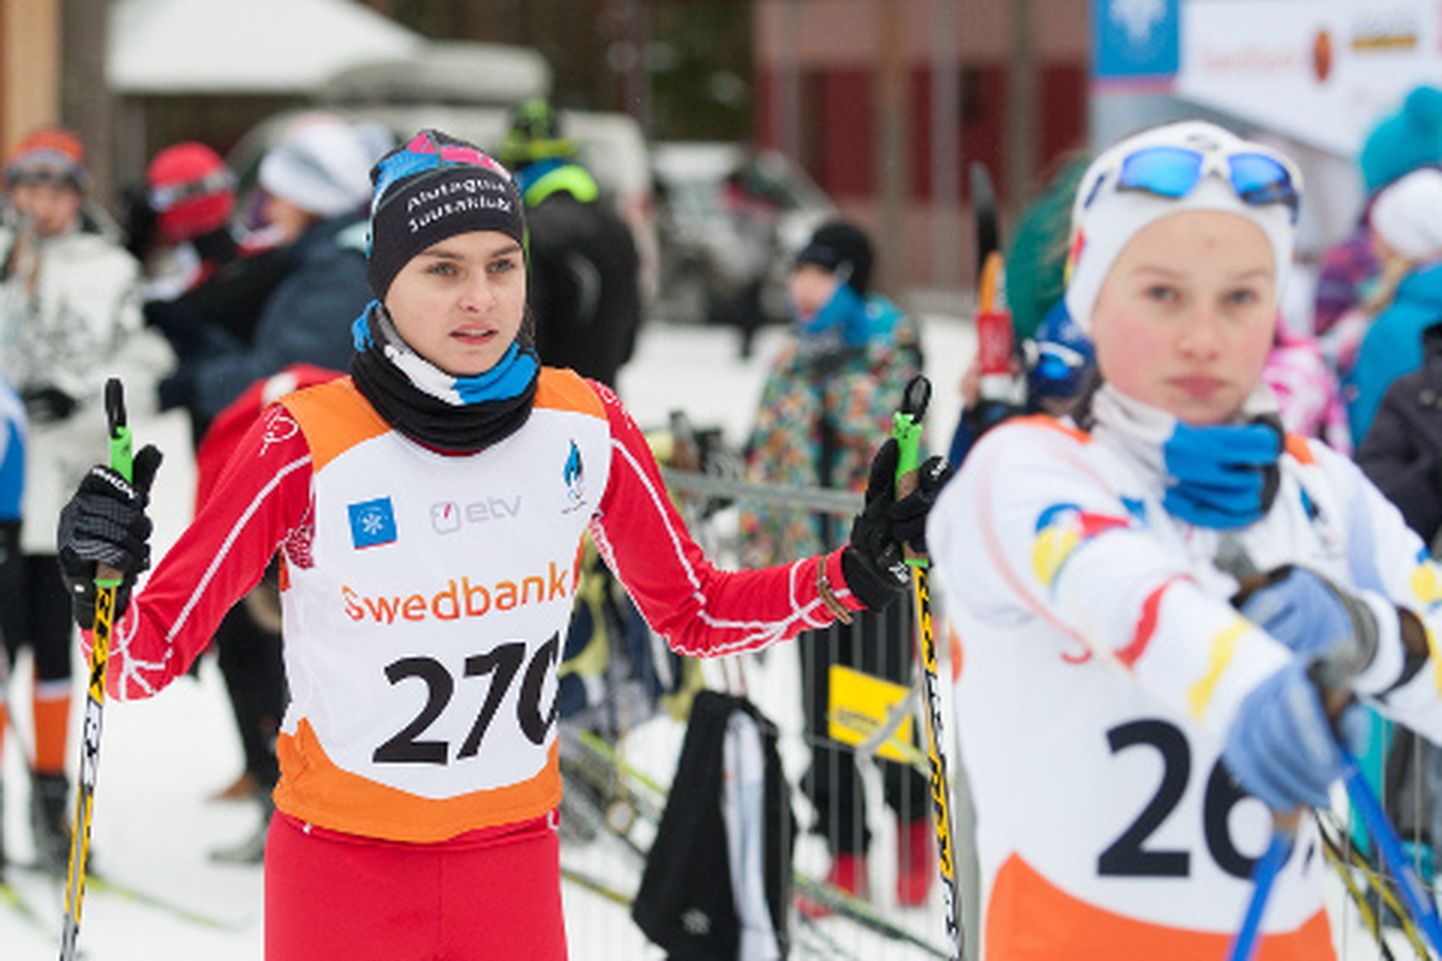 Aveli Uustalu võitis Eesti noorte meistrivõistlustel kuldmedali nii individuaalsõidus kui teatesõidus. Eelseisval nädalavahetusel peaks ta esimest korda oma võimeid proovima ka Eesti täiskasvanute meistrivõistlustel.